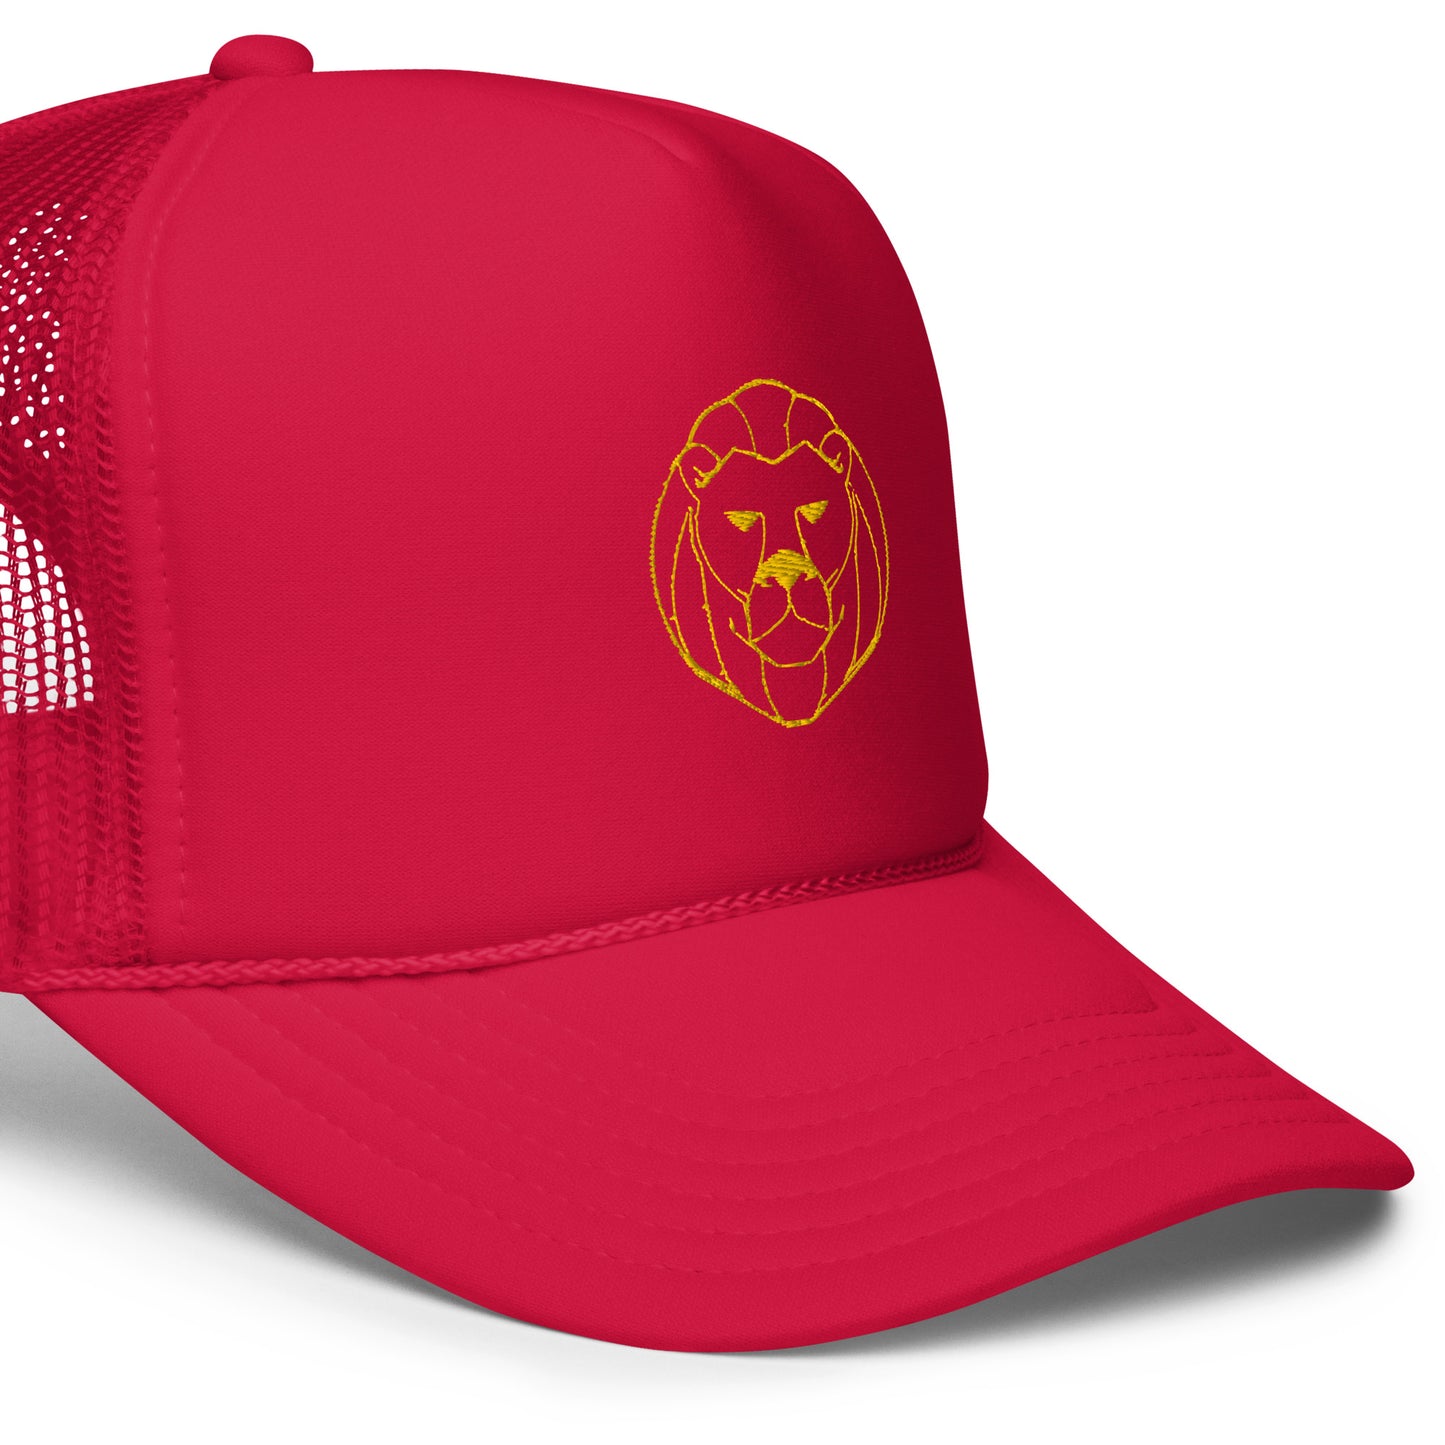 Lion heart trucker hat